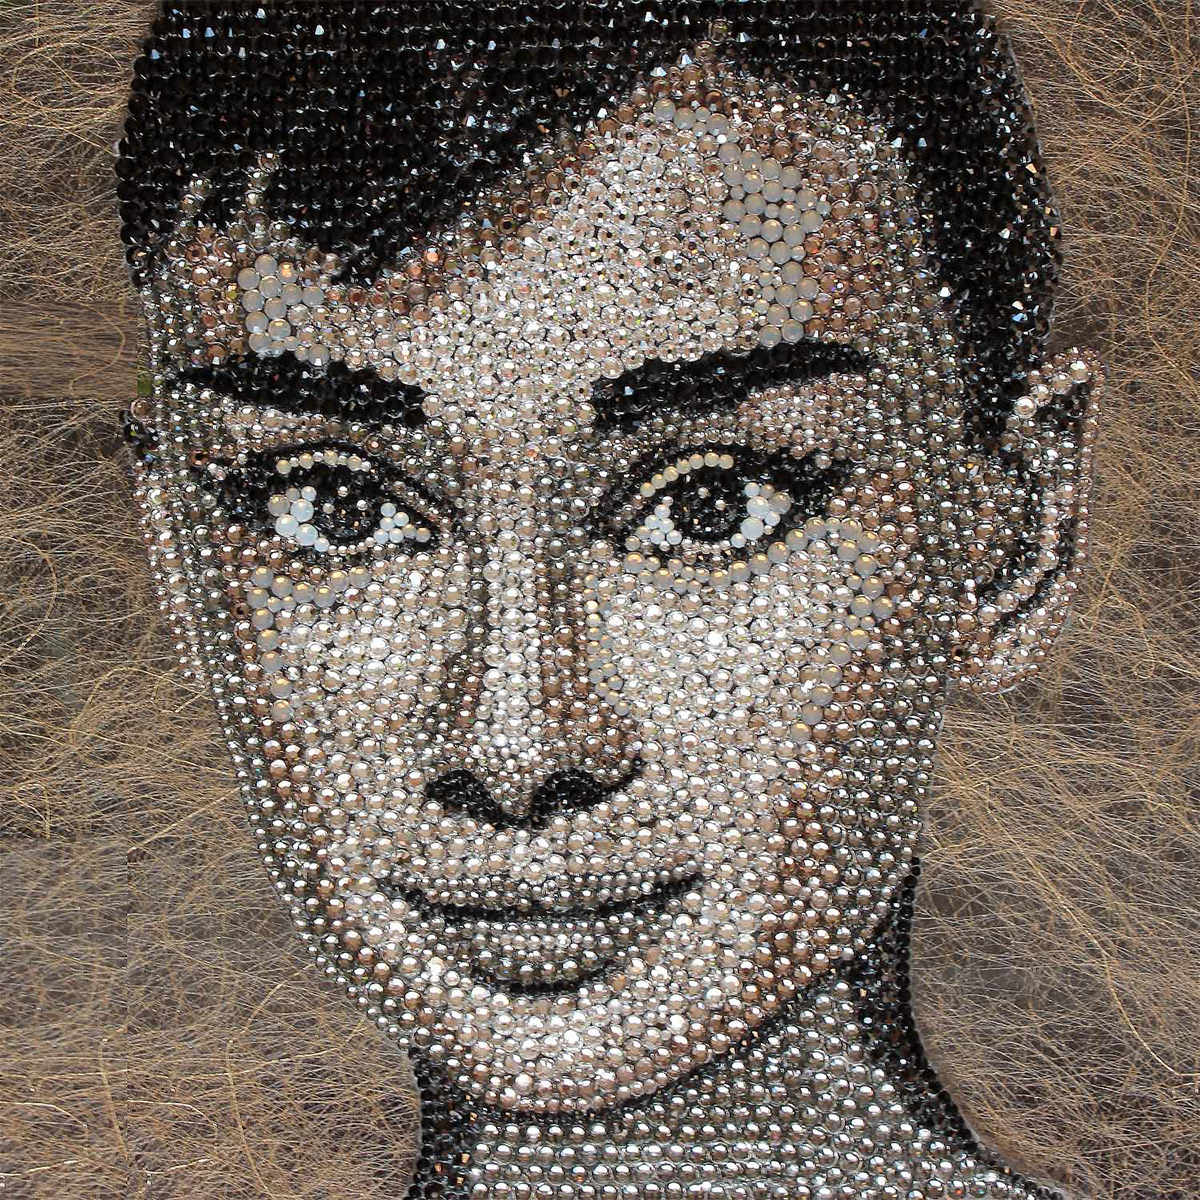 Swarovski swarovski crystal Swarovski Elements portrait swarovski art swarovski portrait Audrey Hepburn morges Audrey Hepburn portrait Pointillism